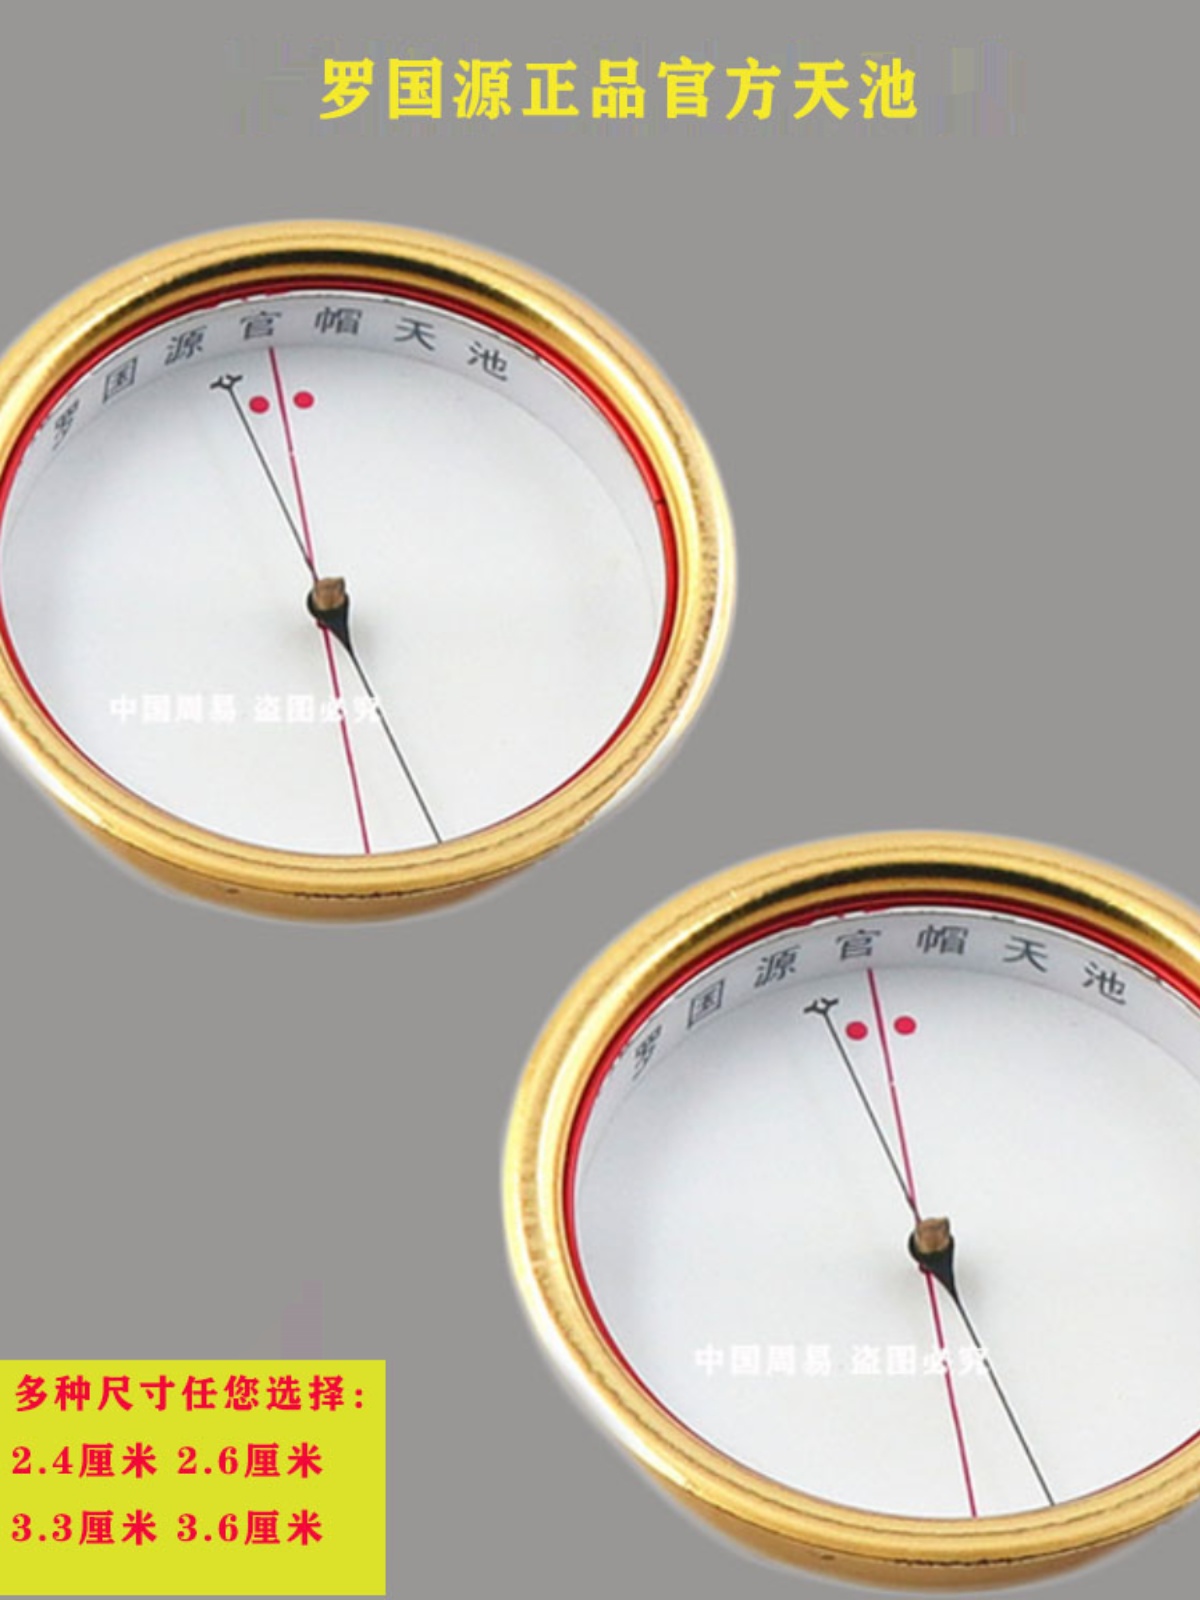 集福堂专用罗盘天池罗国源造官帽风水天池2.4-3.6厘米精准指南针